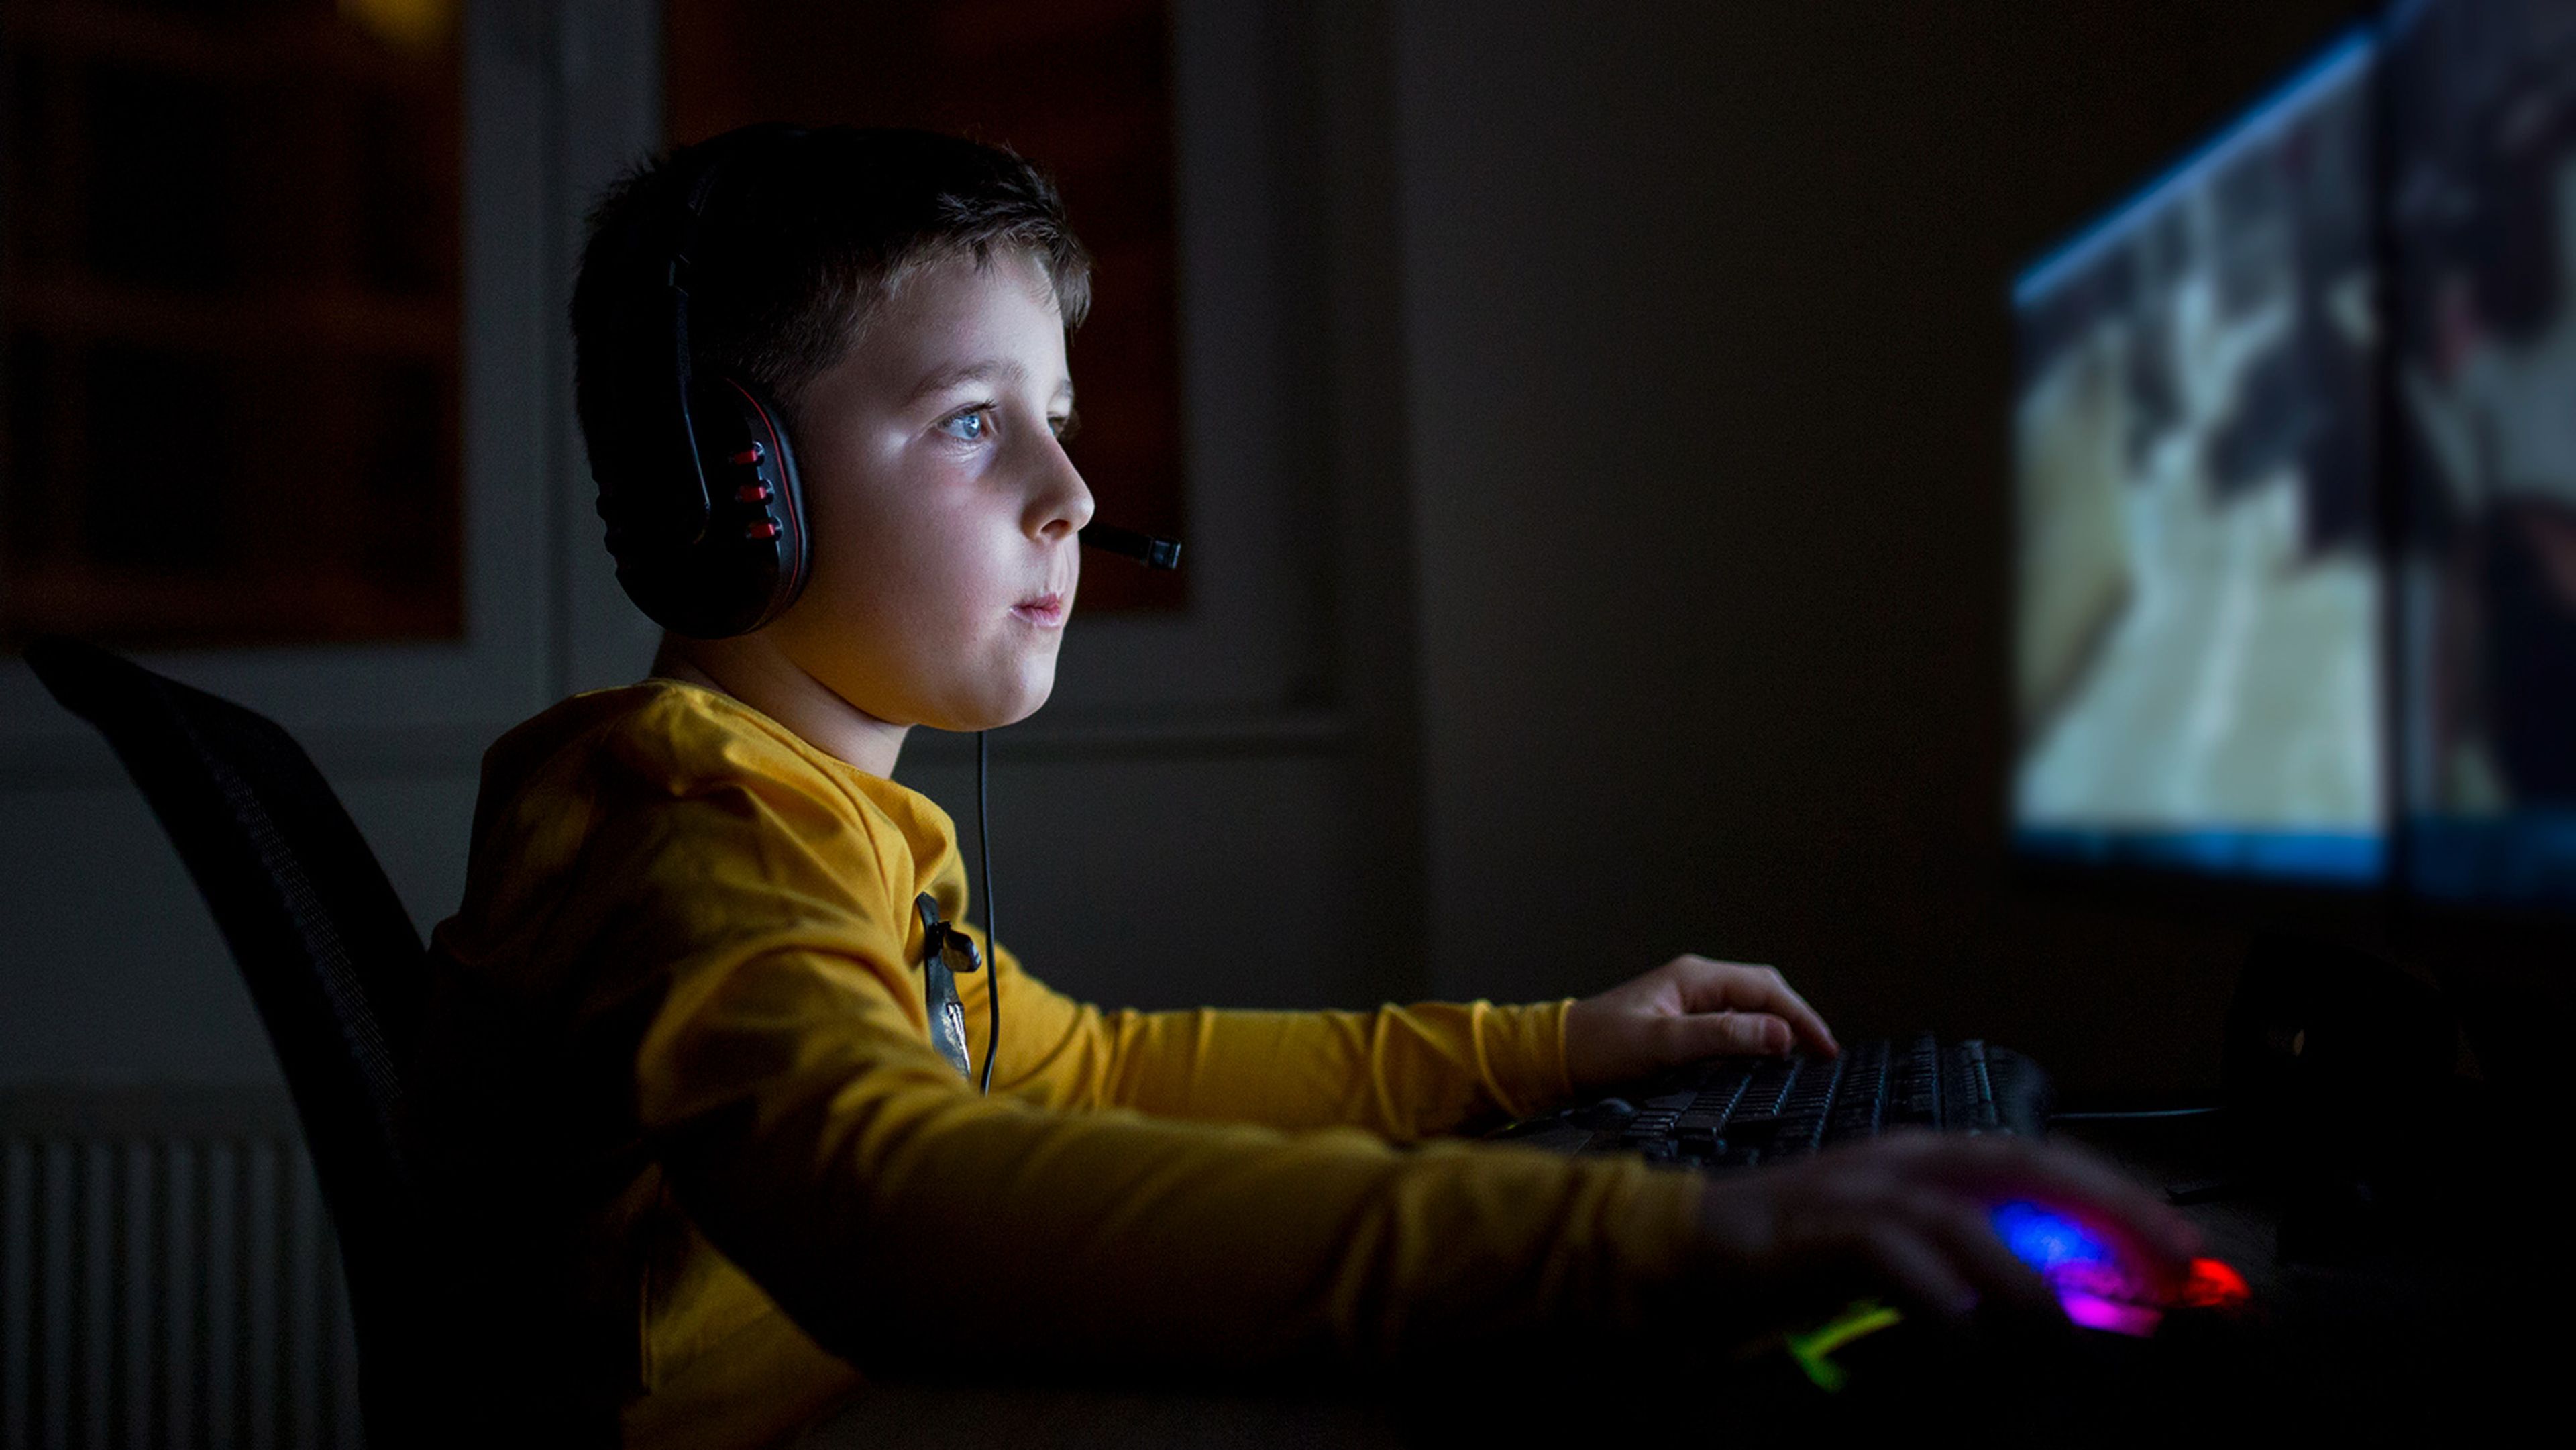 Игры подростков видео. Дети играющие в компьютерные игры. Подростки играющие в компьютерные игры. Ребенок играющий в компьютерную игру. Подросток играющий в компьютерные игры.